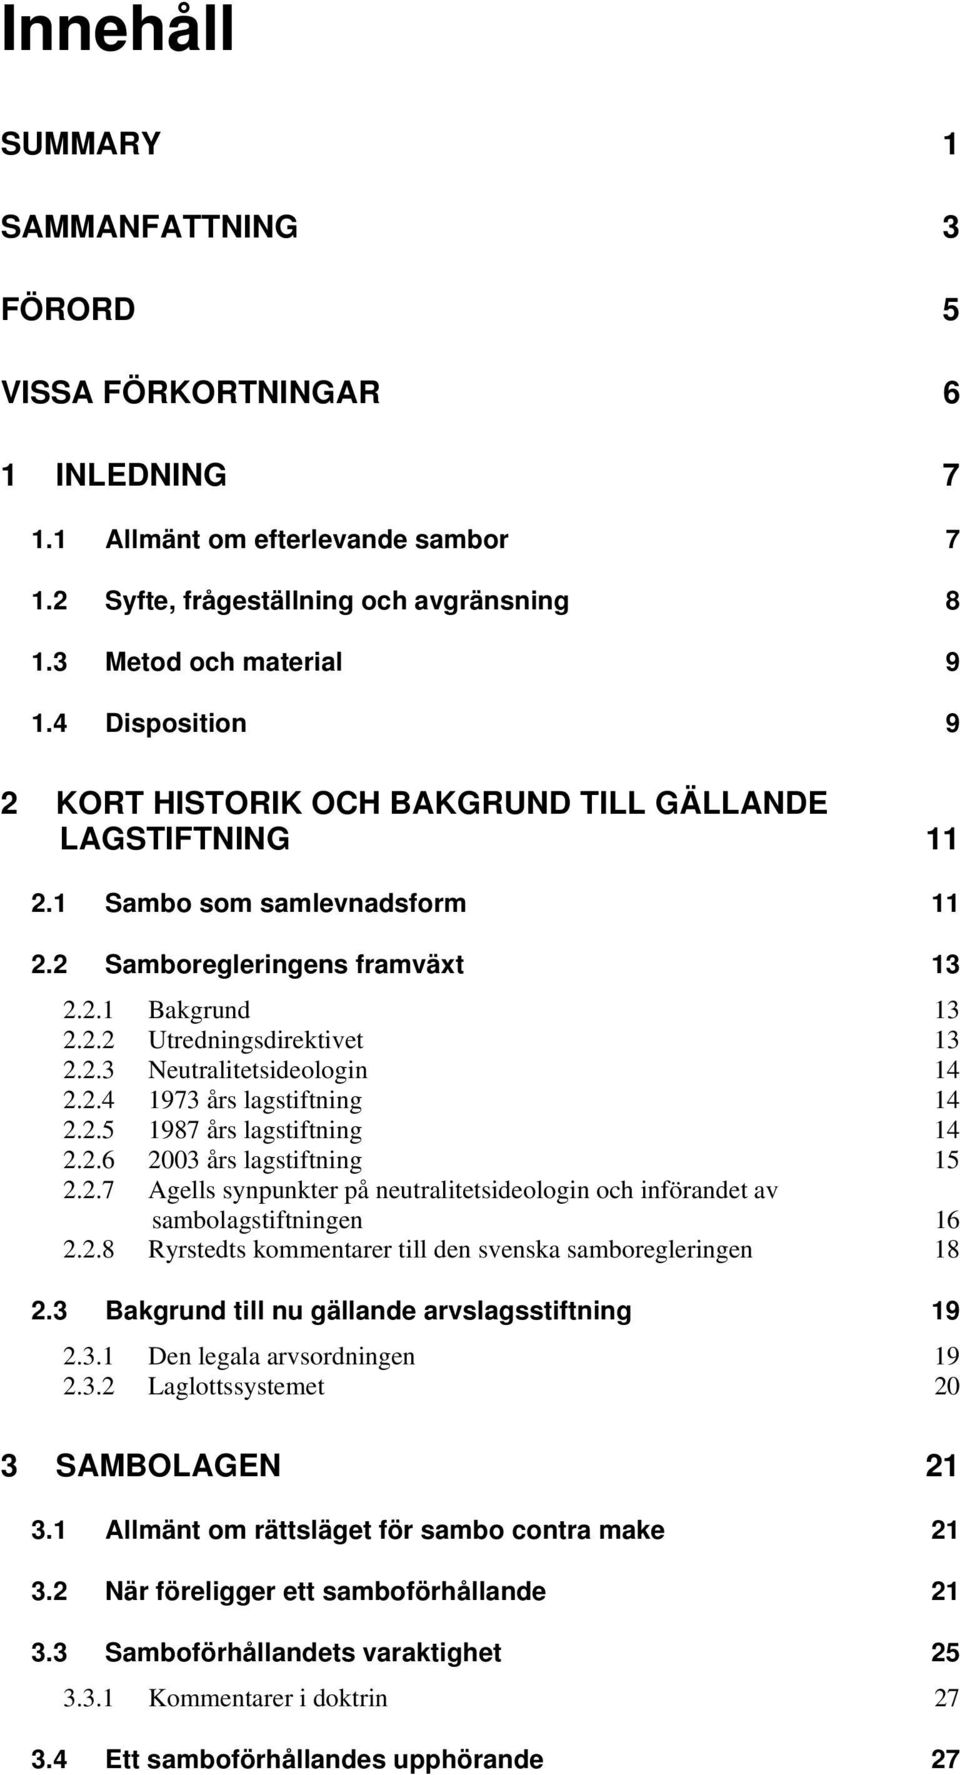 2.4 1973 års lagstiftning 14 2.2.5 1987 års lagstiftning 14 2.2.6 2003 års lagstiftning 15 2.2.7 Agells synpunkter på neutralitetsideologin och införandet av sambolagstiftningen 16 2.2.8 Ryrstedts kommentarer till den svenska samboregleringen 18 2.